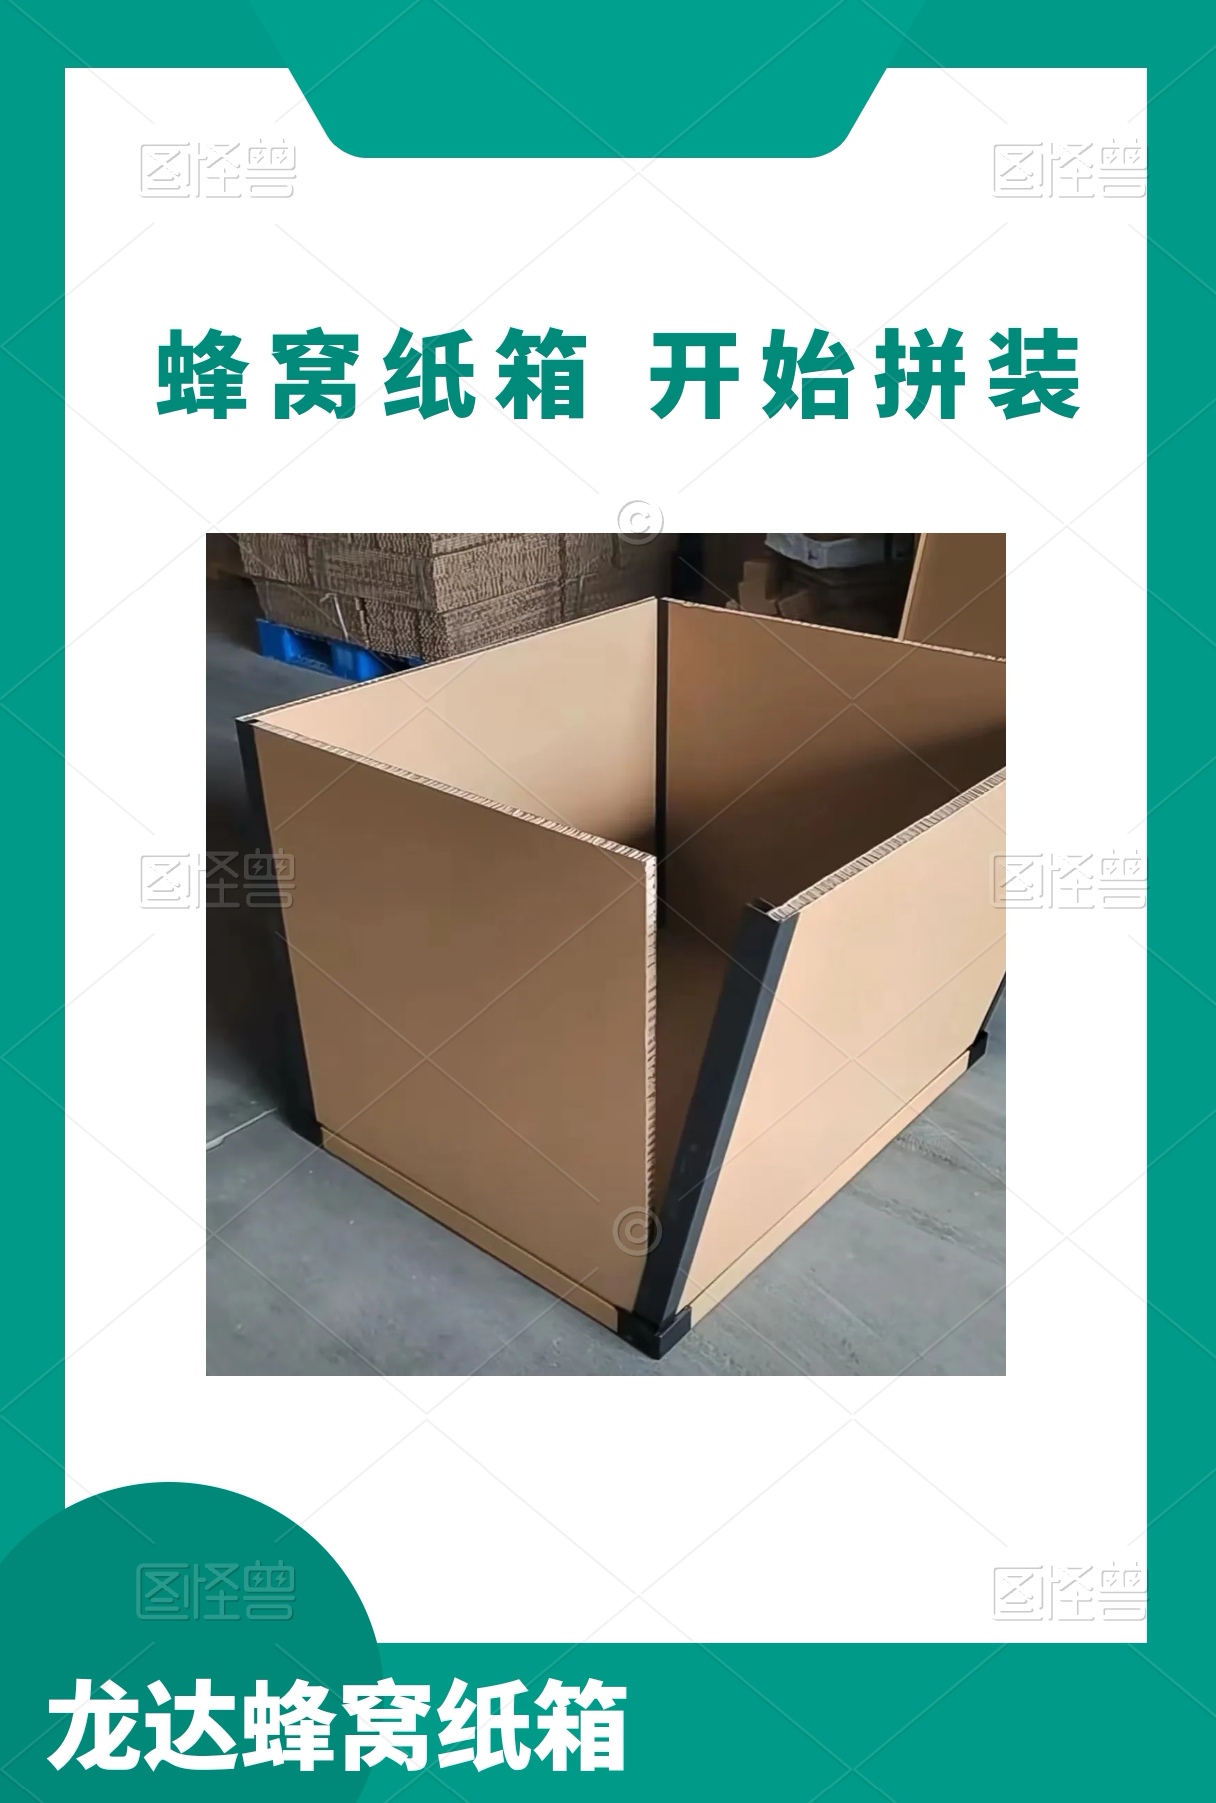 龙达航空包装箱 机械设备包装箱 纸托盘一体包装箱 定制各种规格